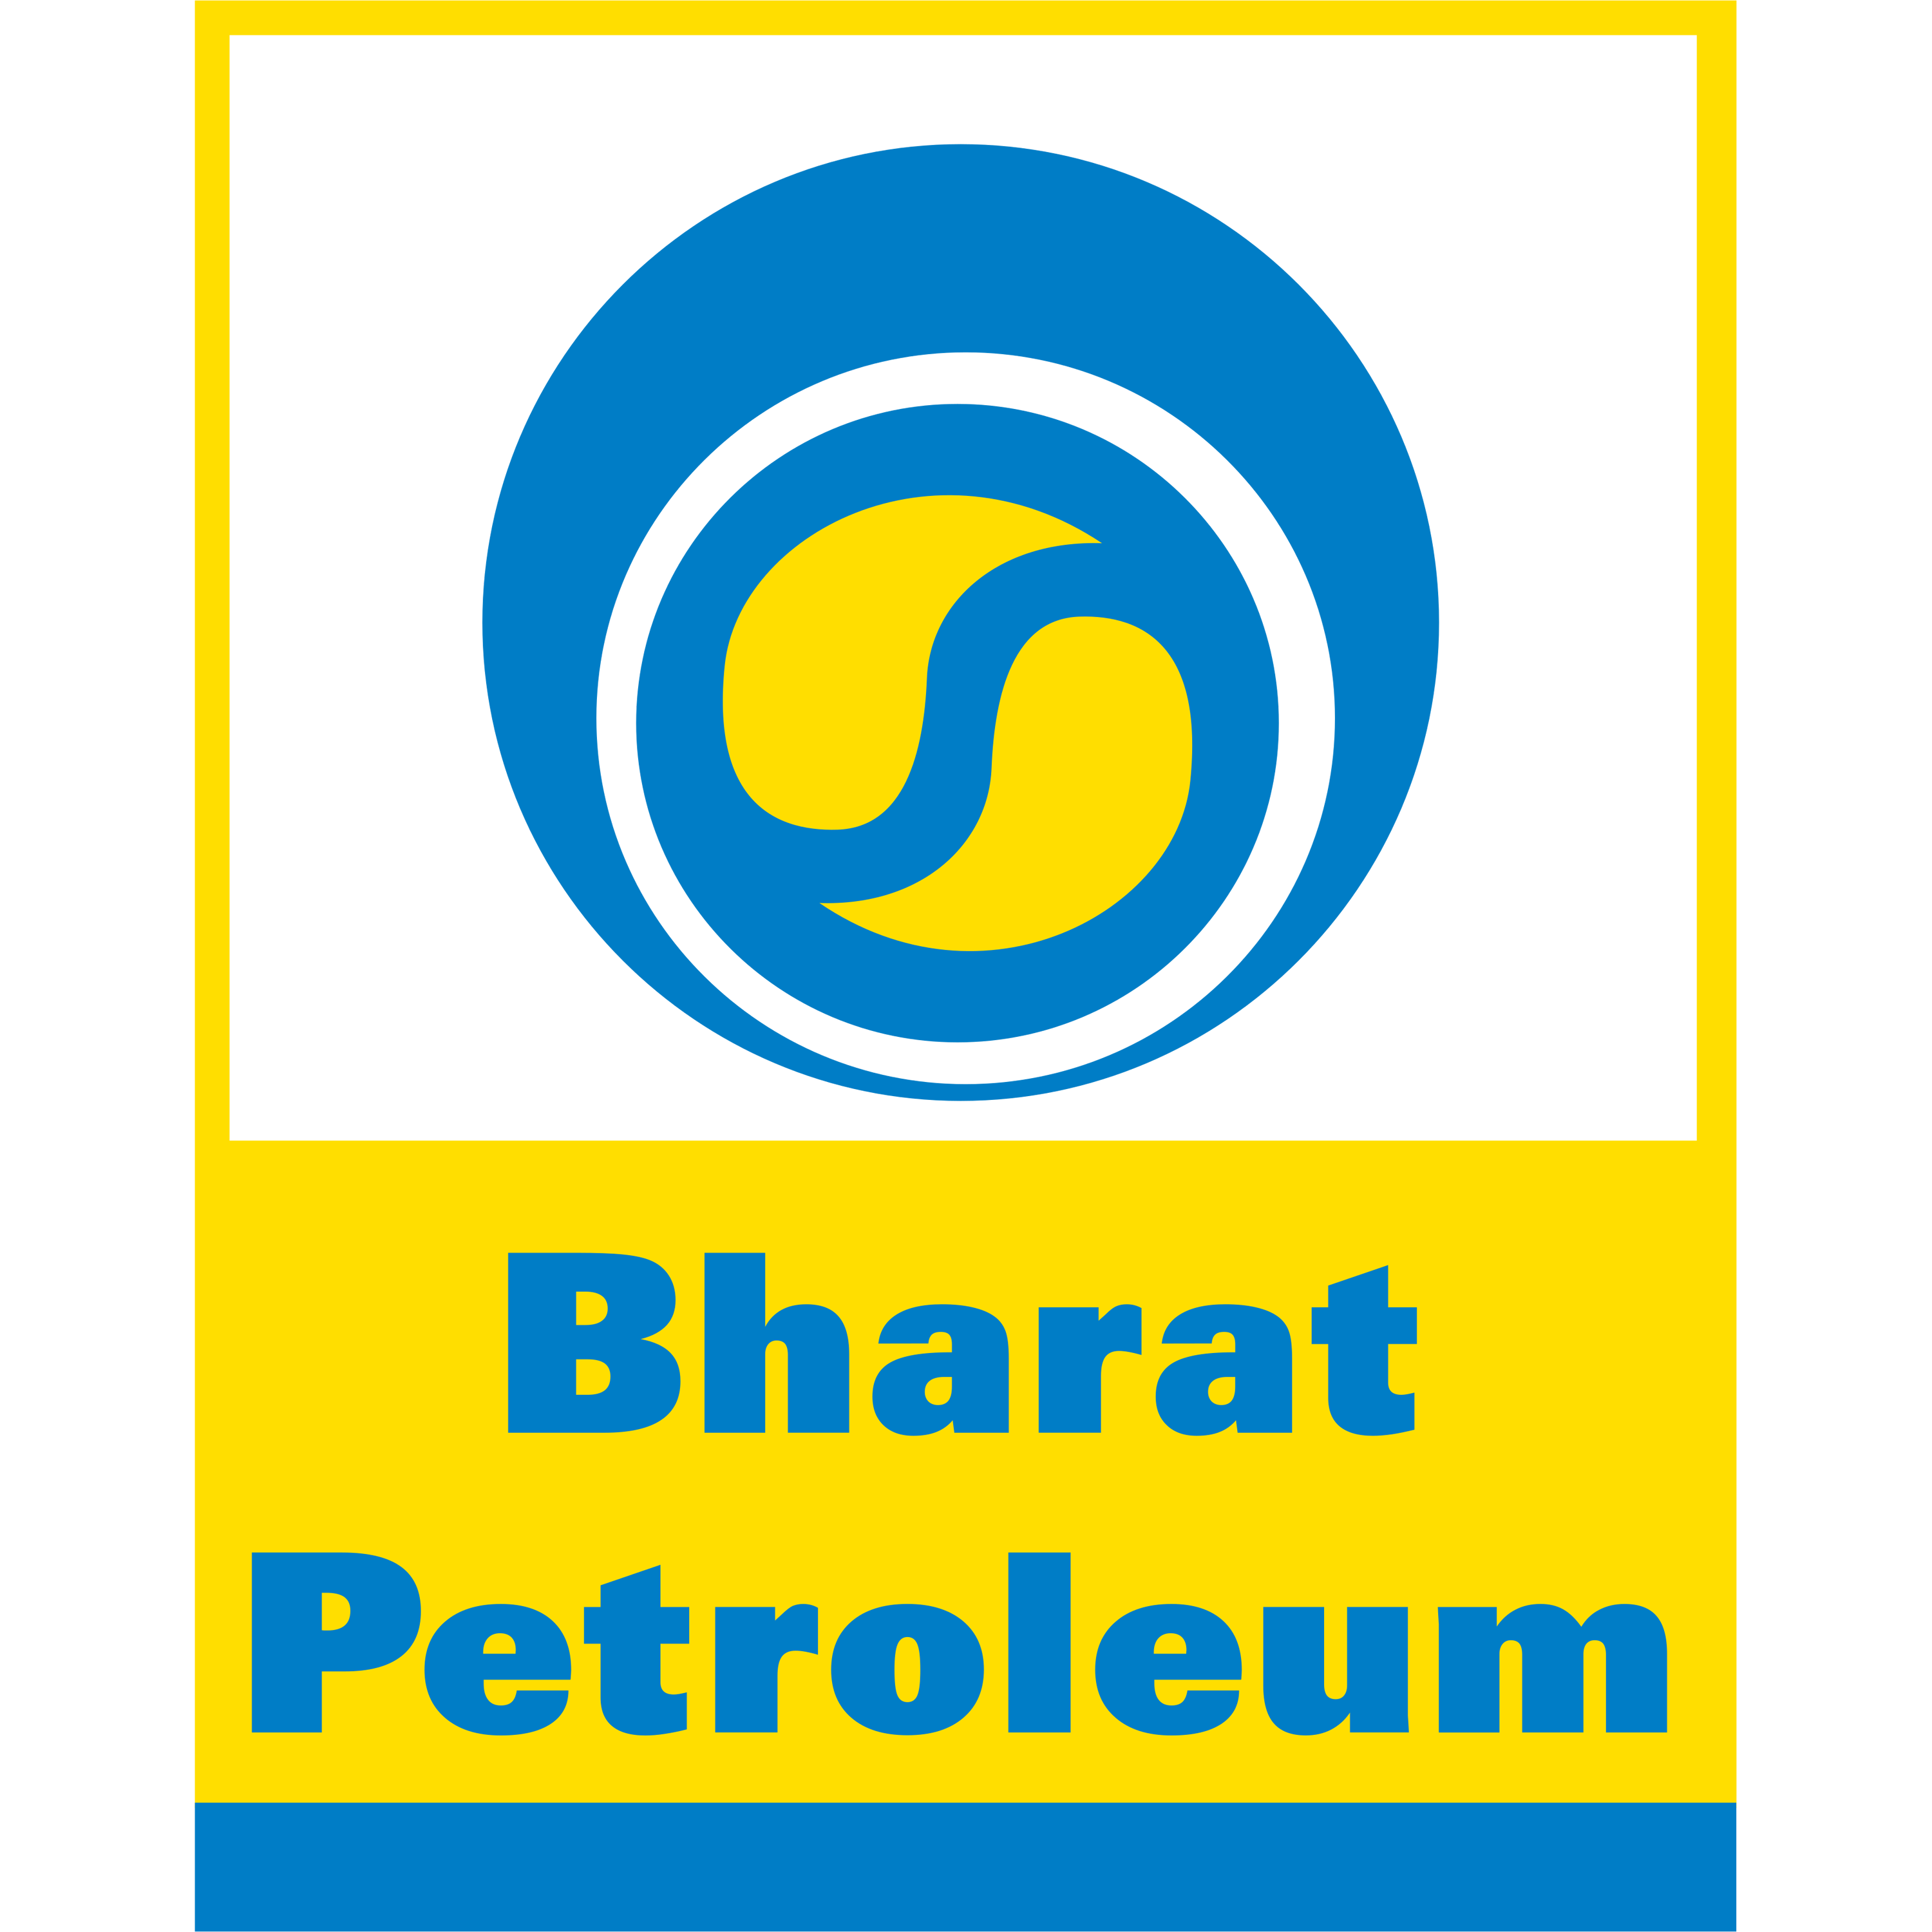 Bharat Petroleum Logo Transparent Image